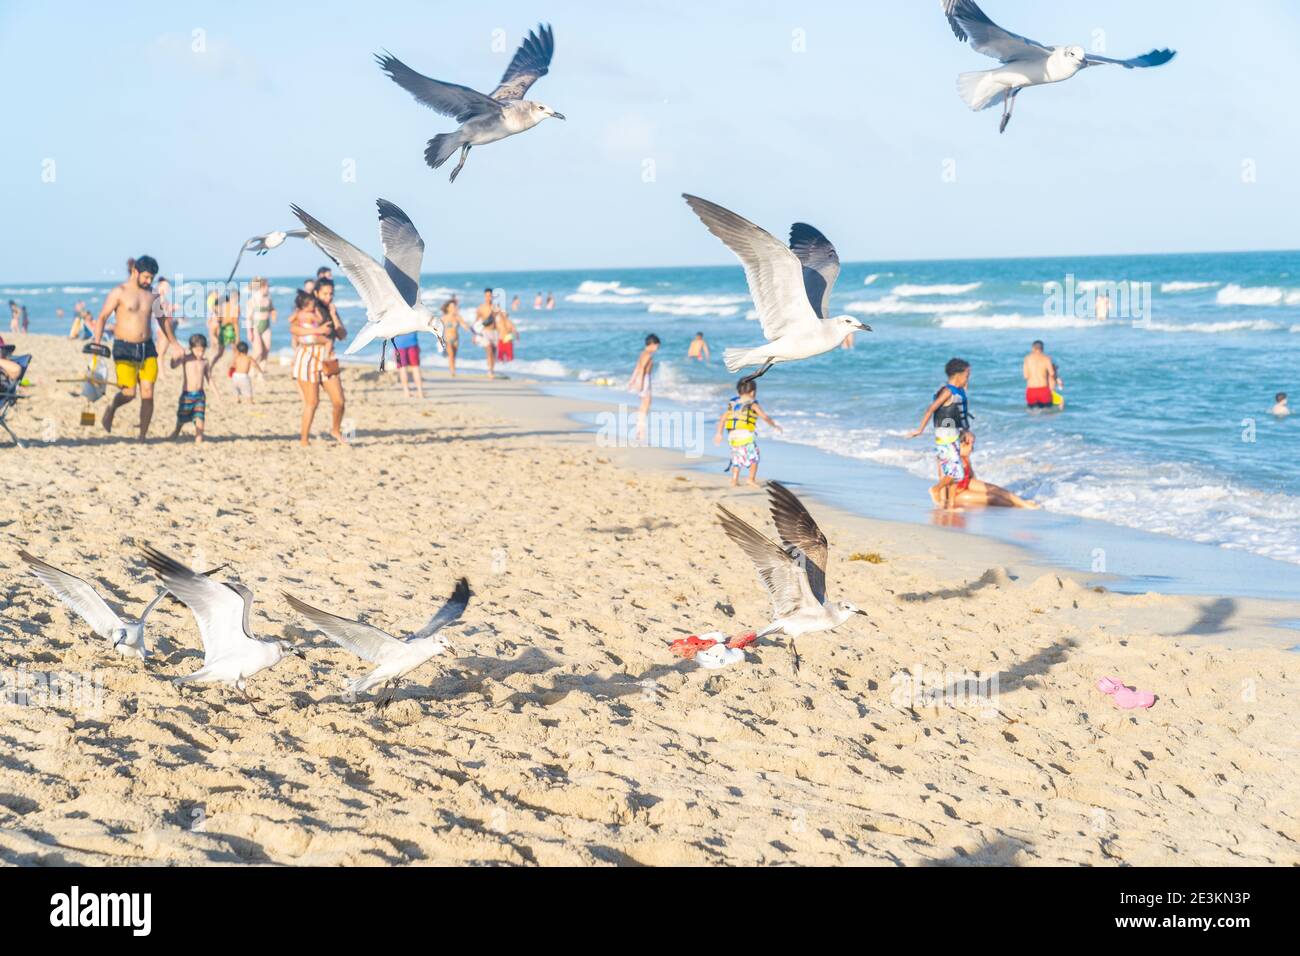 Miami, Floride - 1er janvier 2021 : une frouse de Seaguls survolant les plages de Miami, Floride. Banque D'Images